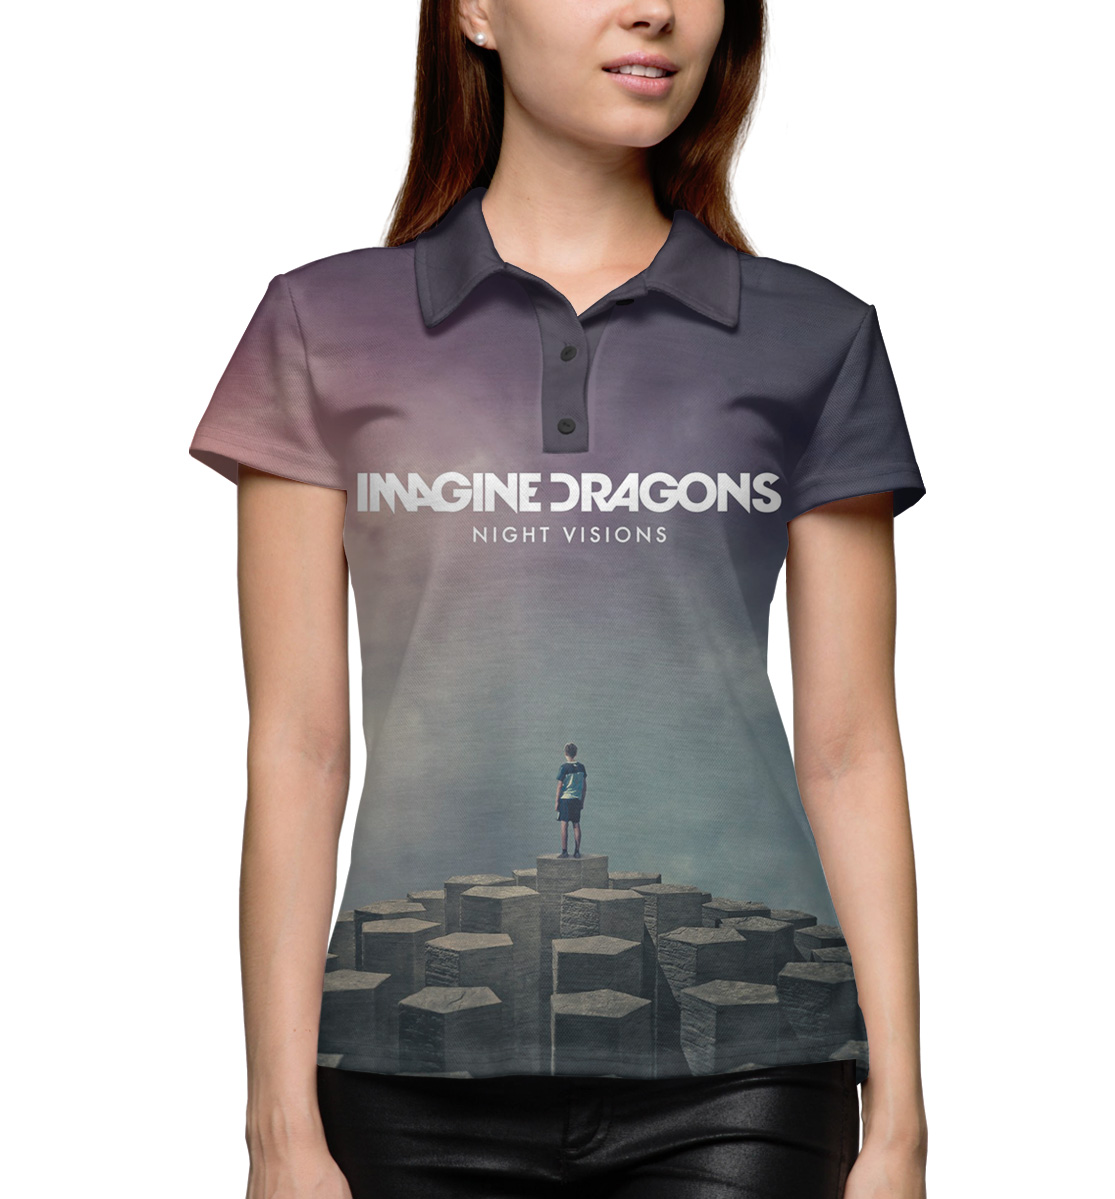 Imagining ru. Принт imagination. Imagine Dragons футболка купить.